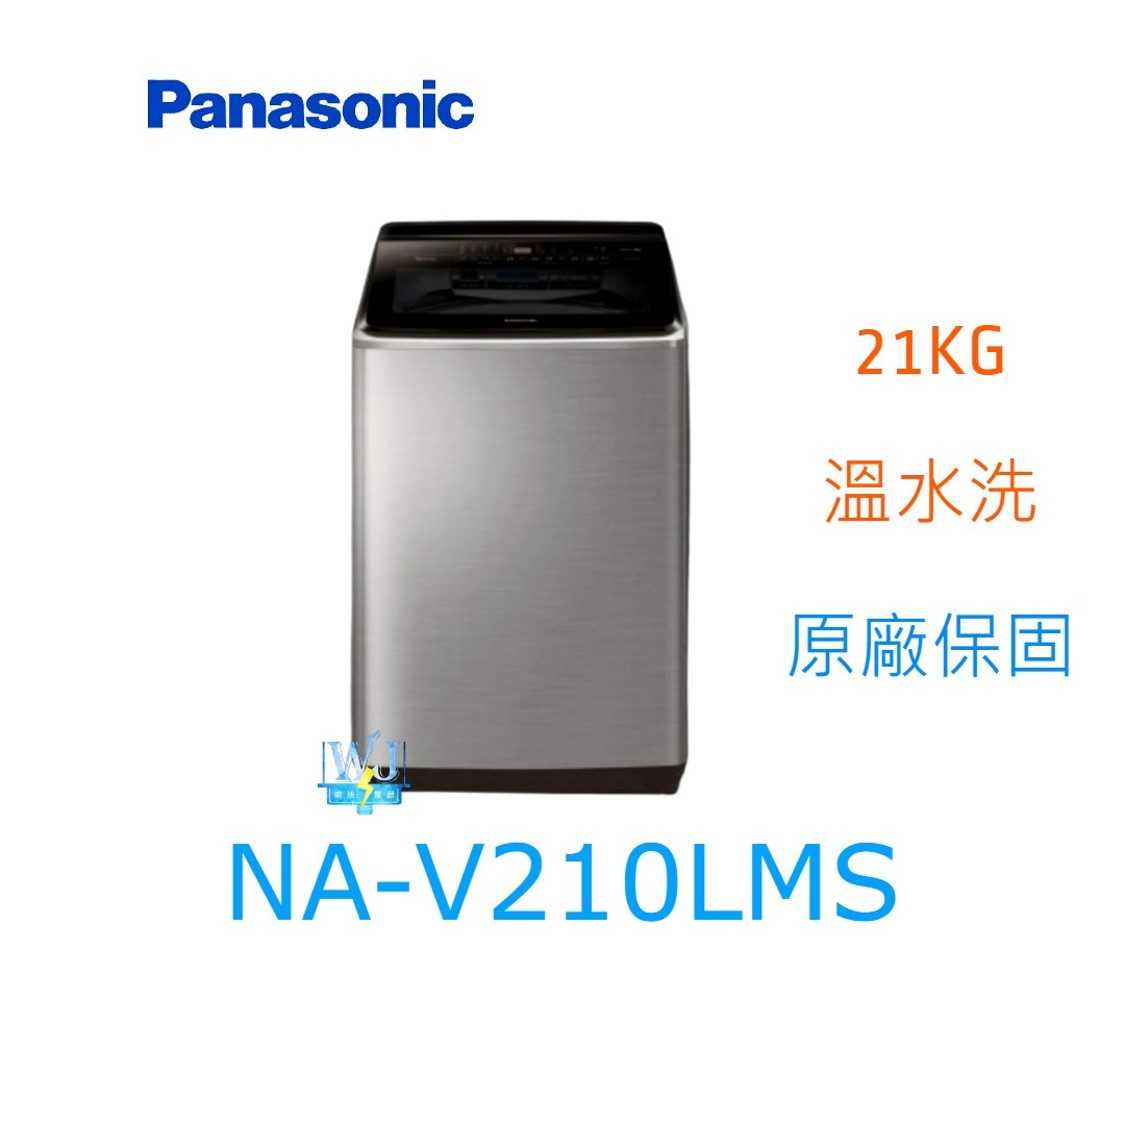 ☆可議價【暐竣電器】Panasonic 國際牌 NAV210LMS 直立式洗衣機 NA-V210LMS 溫水洗 洗衣機